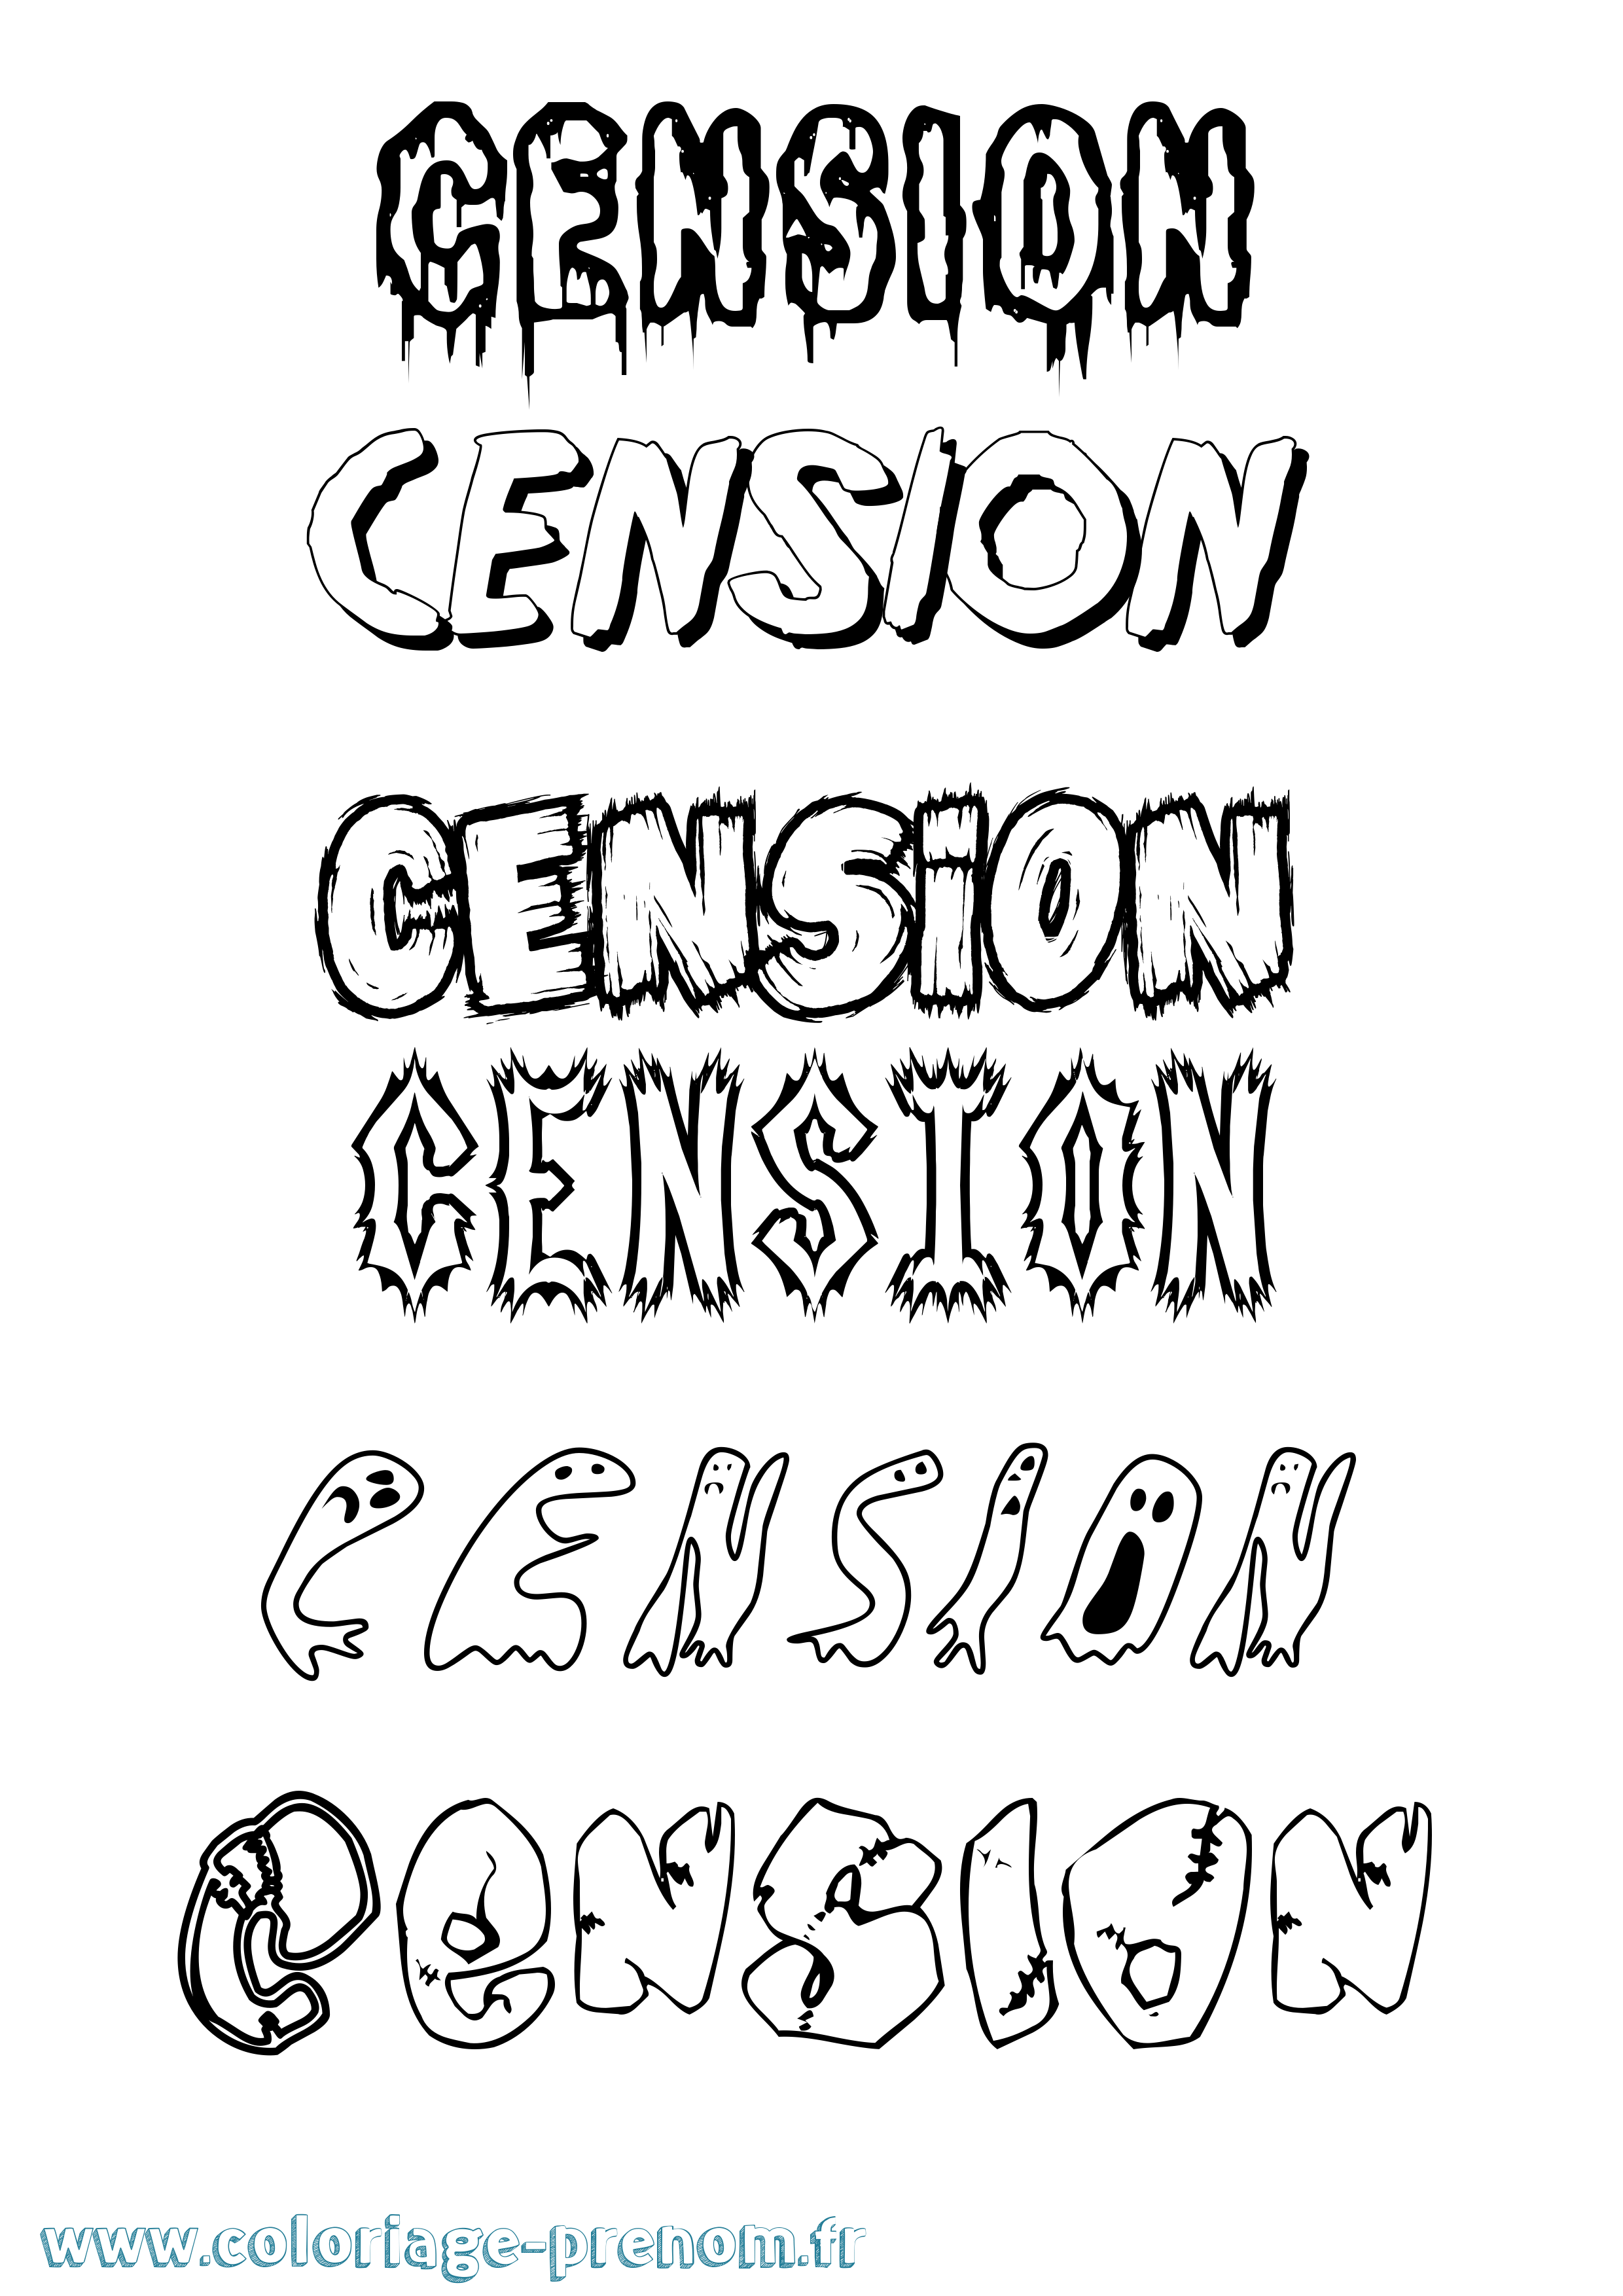 Coloriage prénom Cension Frisson